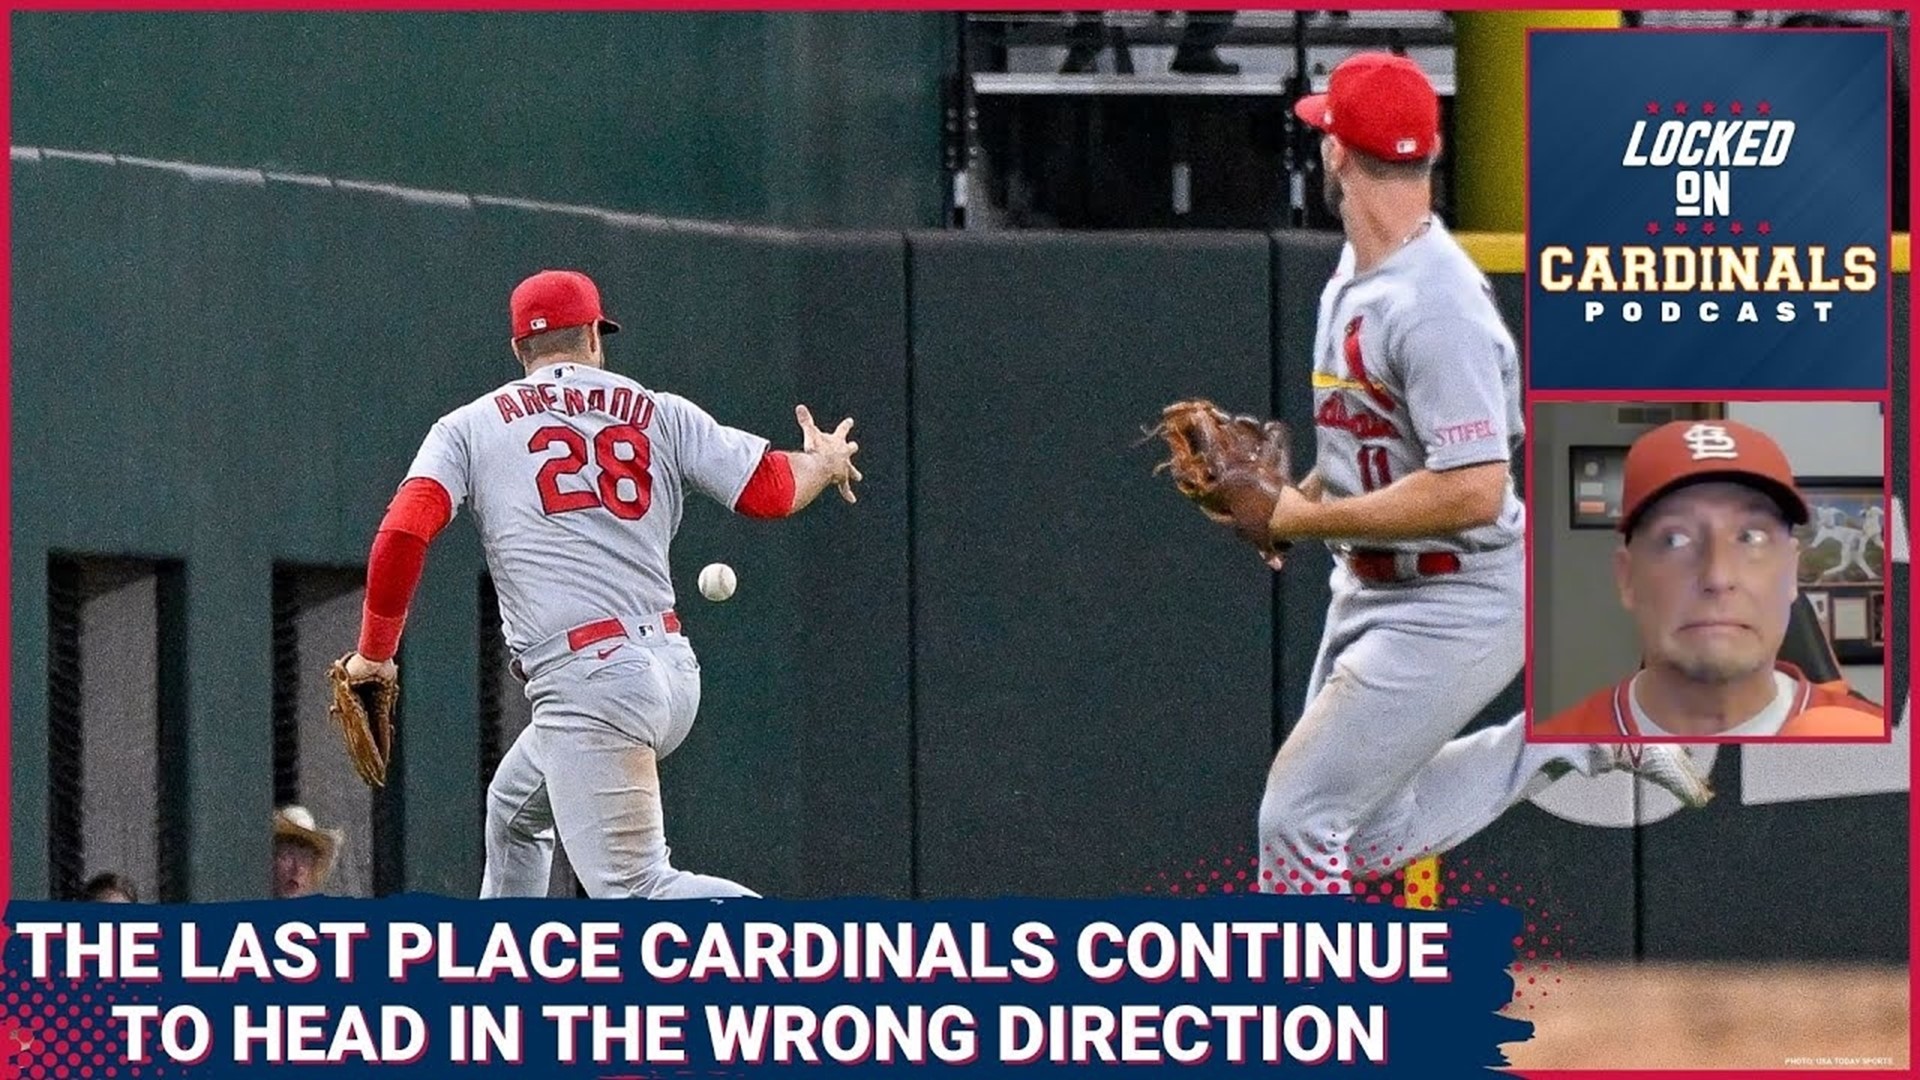 Fundamentally Bad Baseball Continues To Plague The St. Louis Cardinals